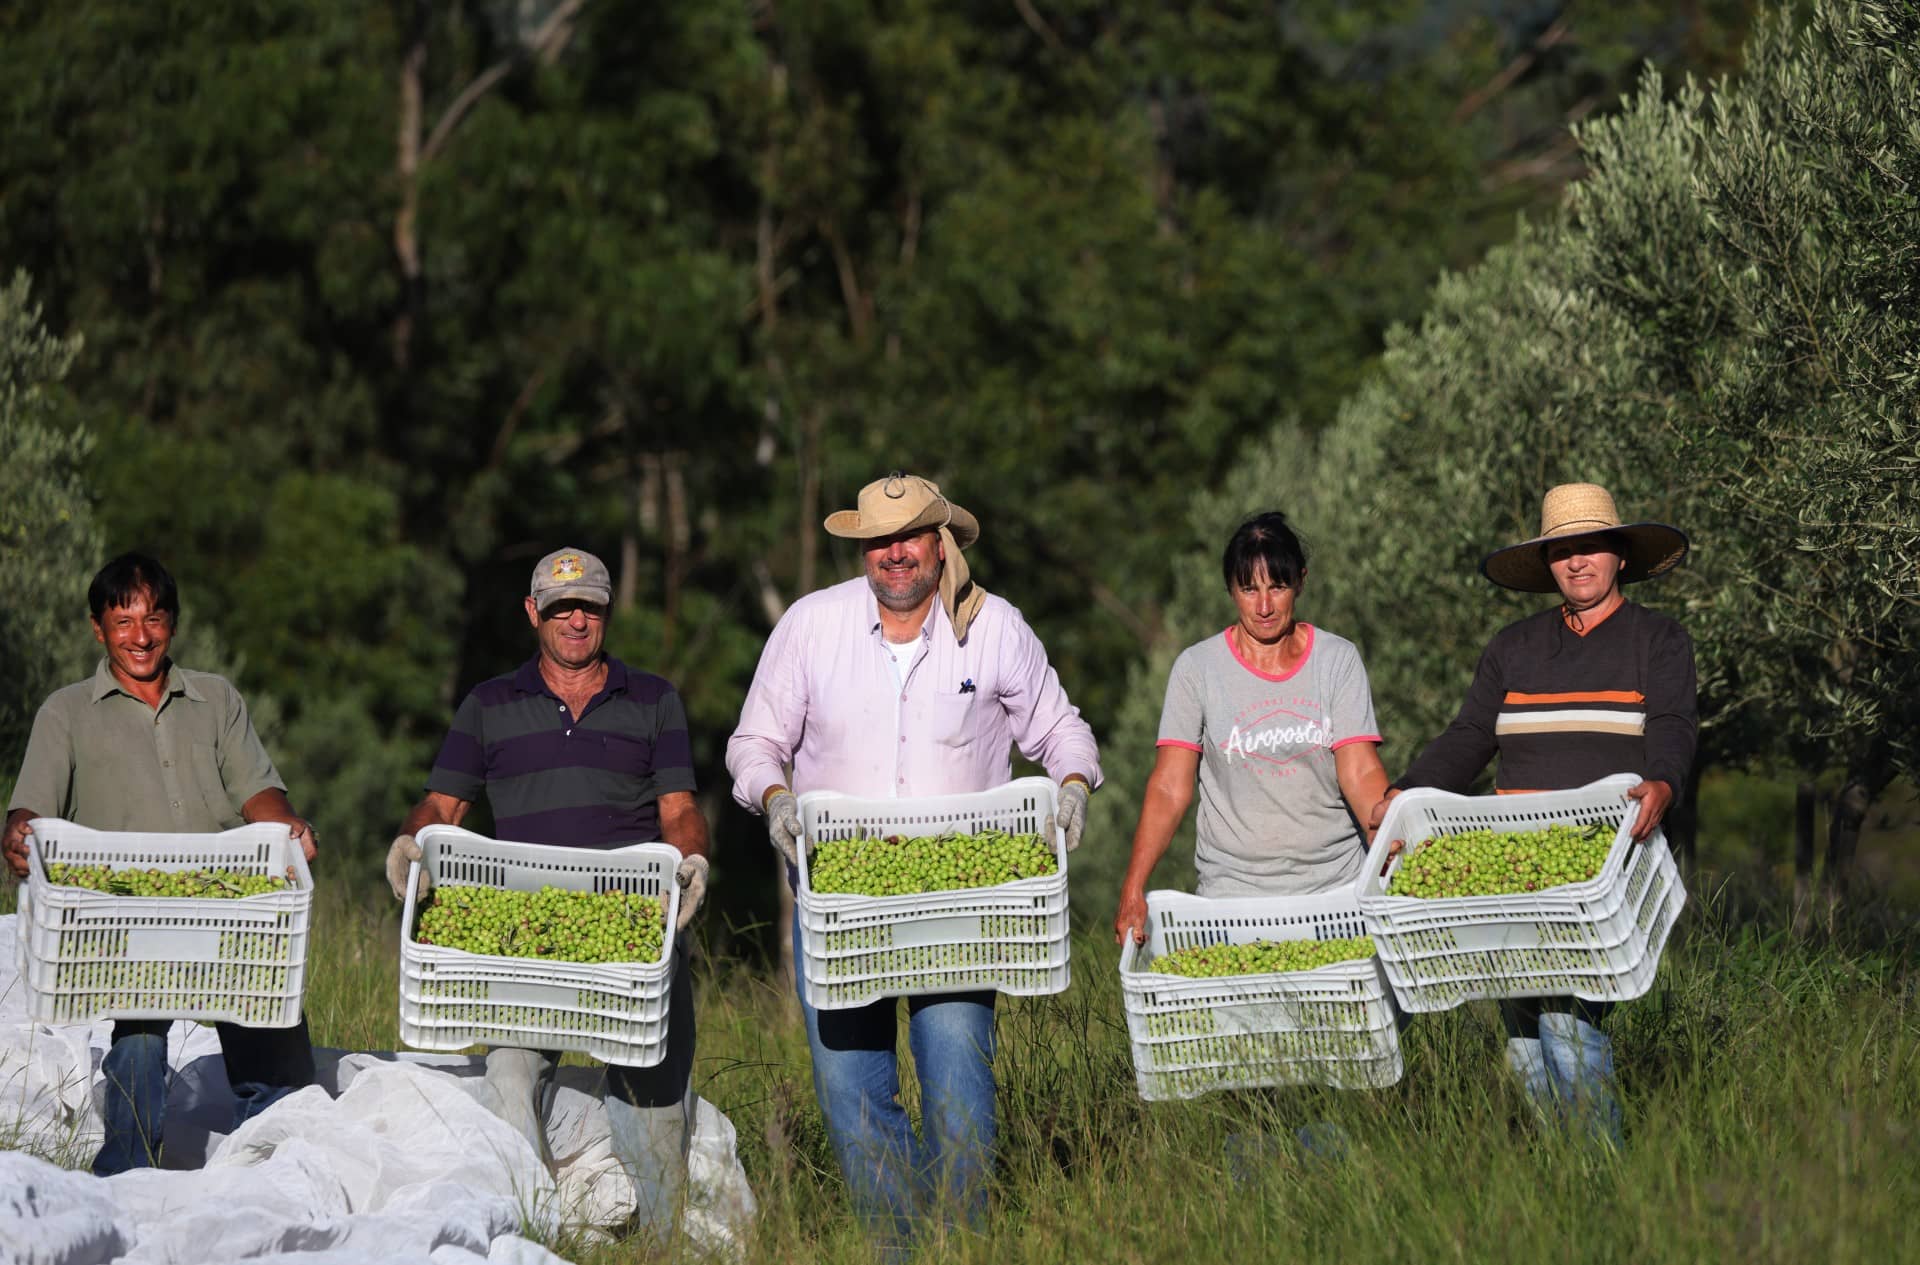 amérique du sud-les-meilleures-concours-d-huiles-d-olive-production-une-autre-année-record-suggère-une-tendance-au-brésil-les-producteurs-disent-l-heure-de-l-huile-d-olive